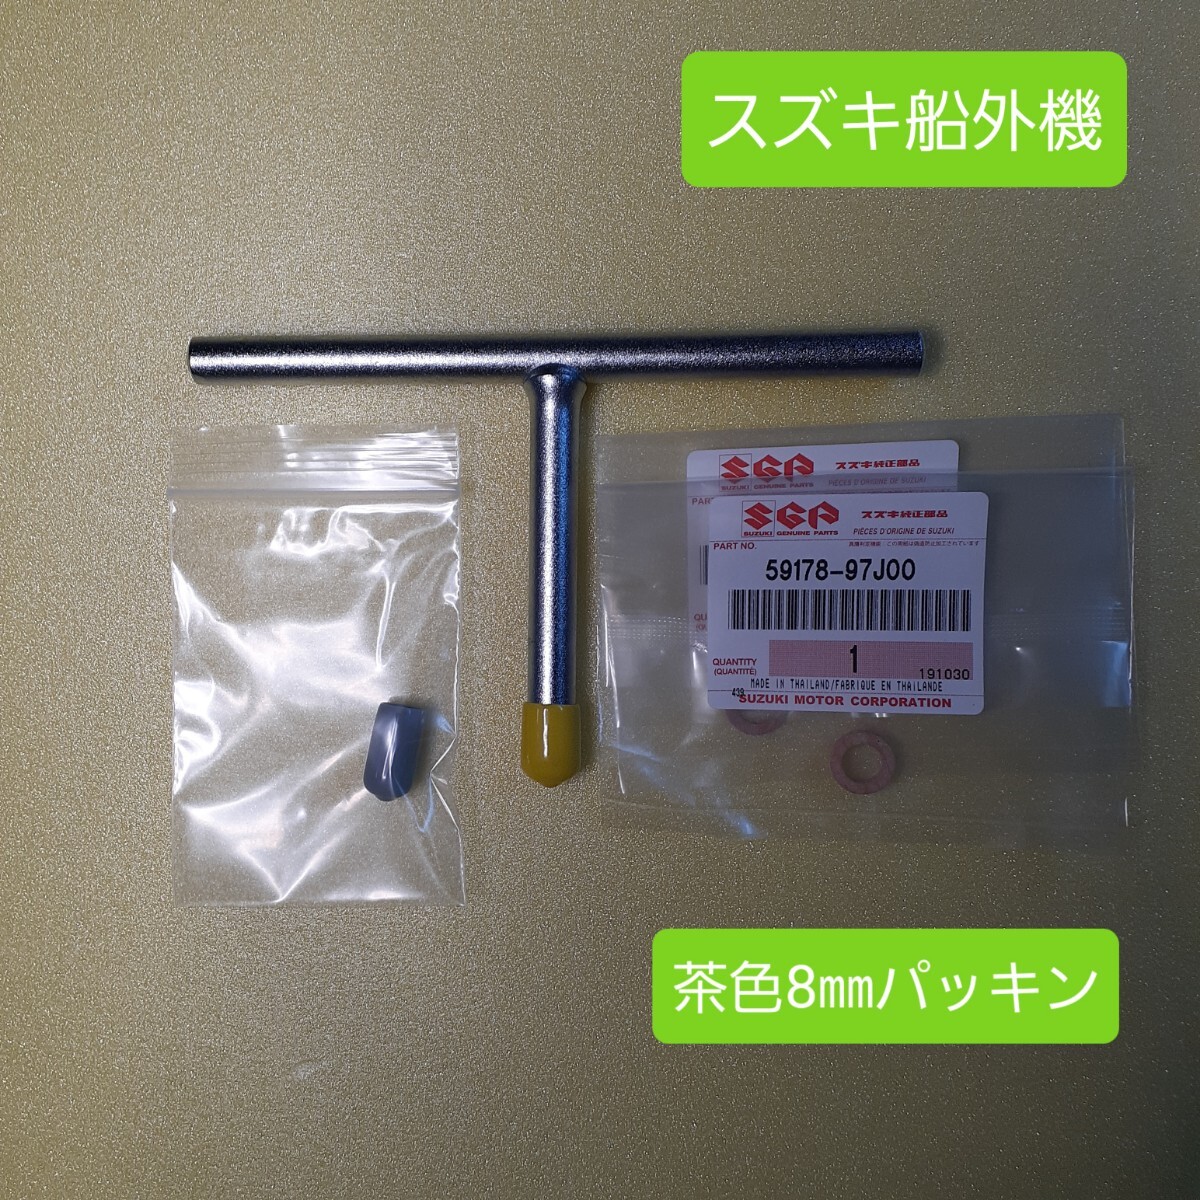 ⑥ SM Tea 2 Suzuki Поставленный наружный блок -Только инструмент смены передачи.